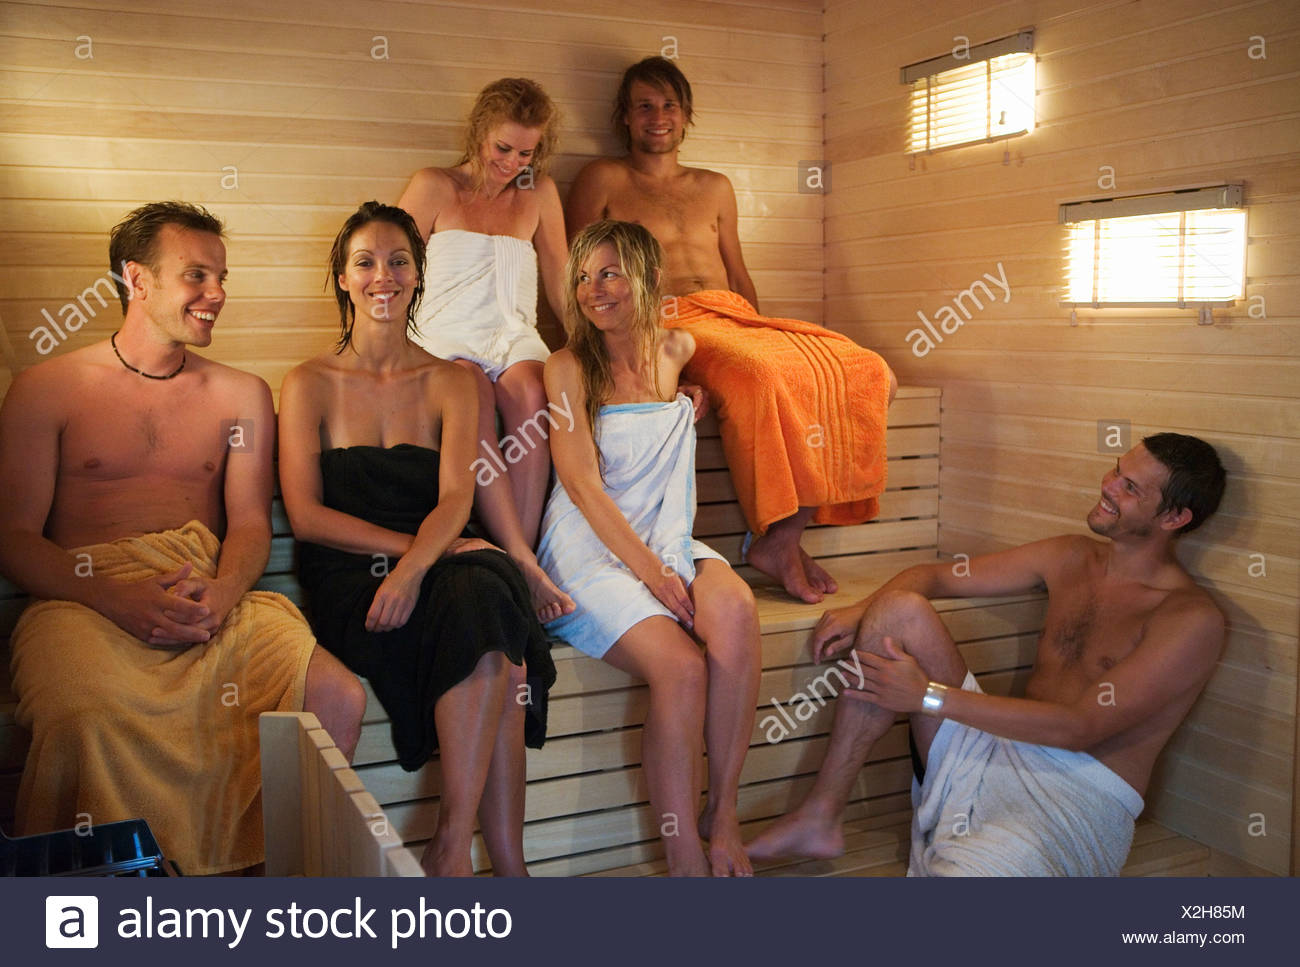 семейные свингеры в банях фото 34